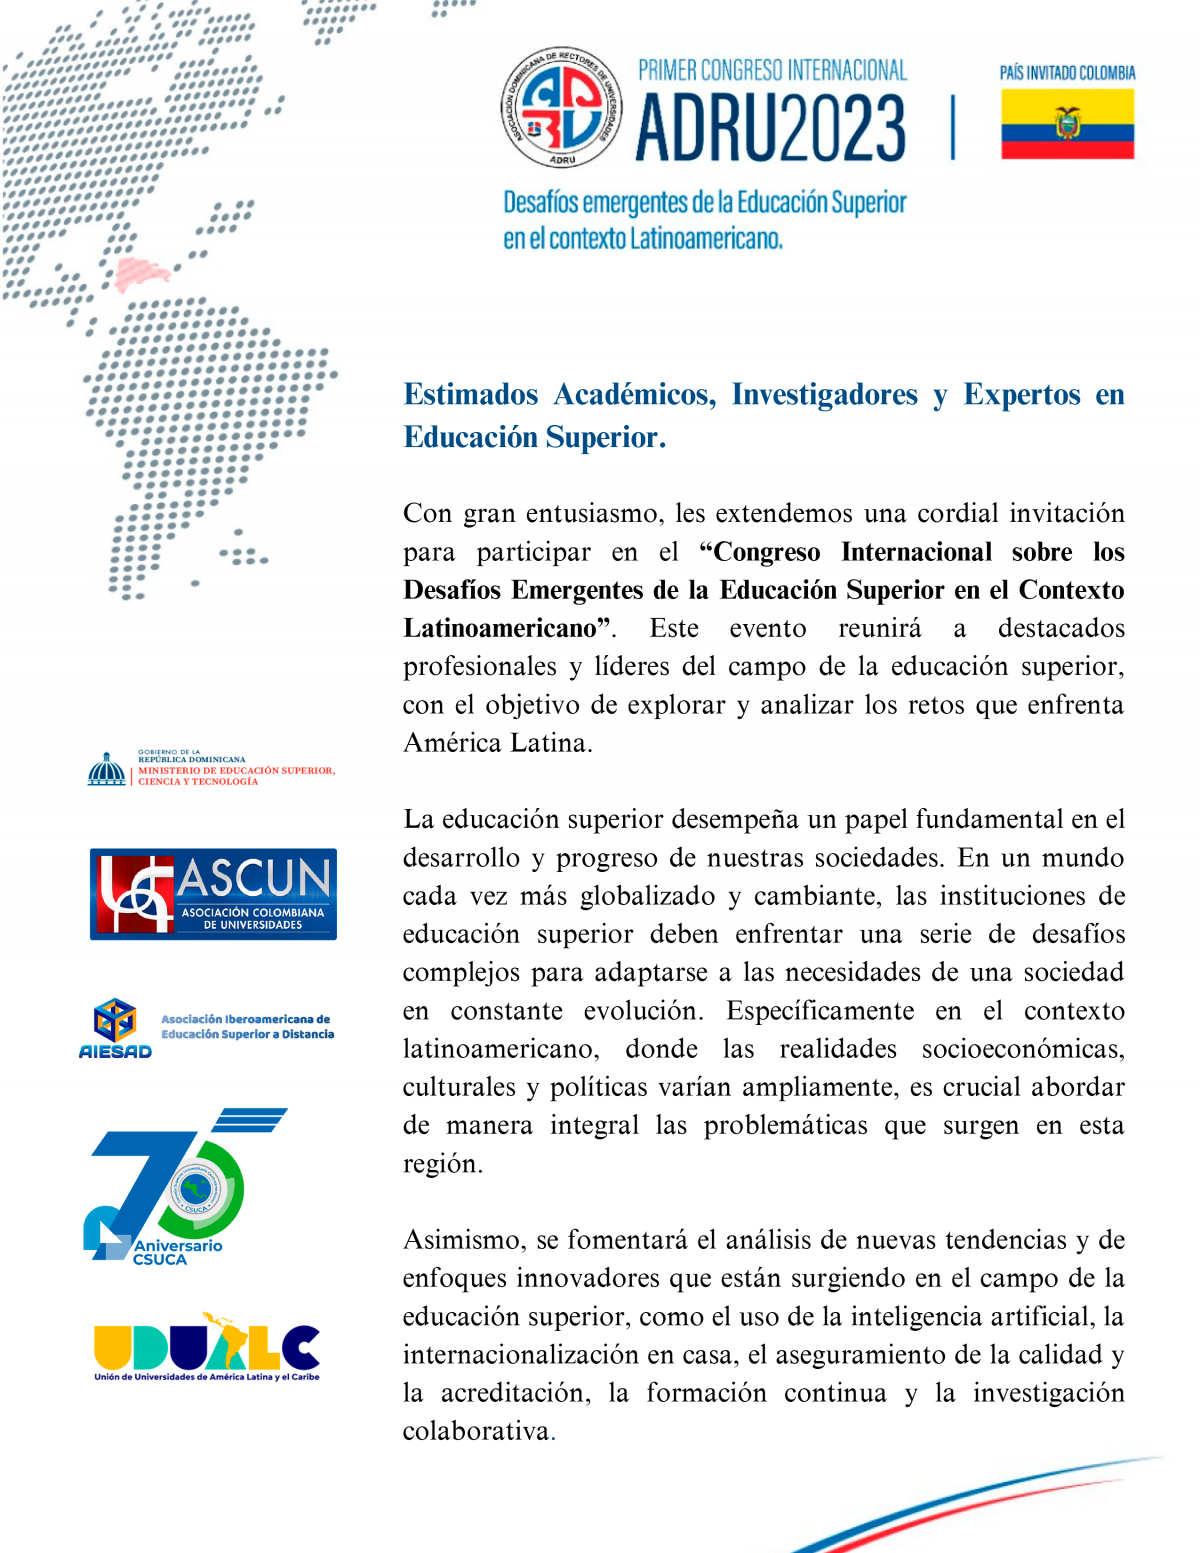 Congreso Internacional “Desafíos emergentes de la educación superior en el contexto latinoamericano”